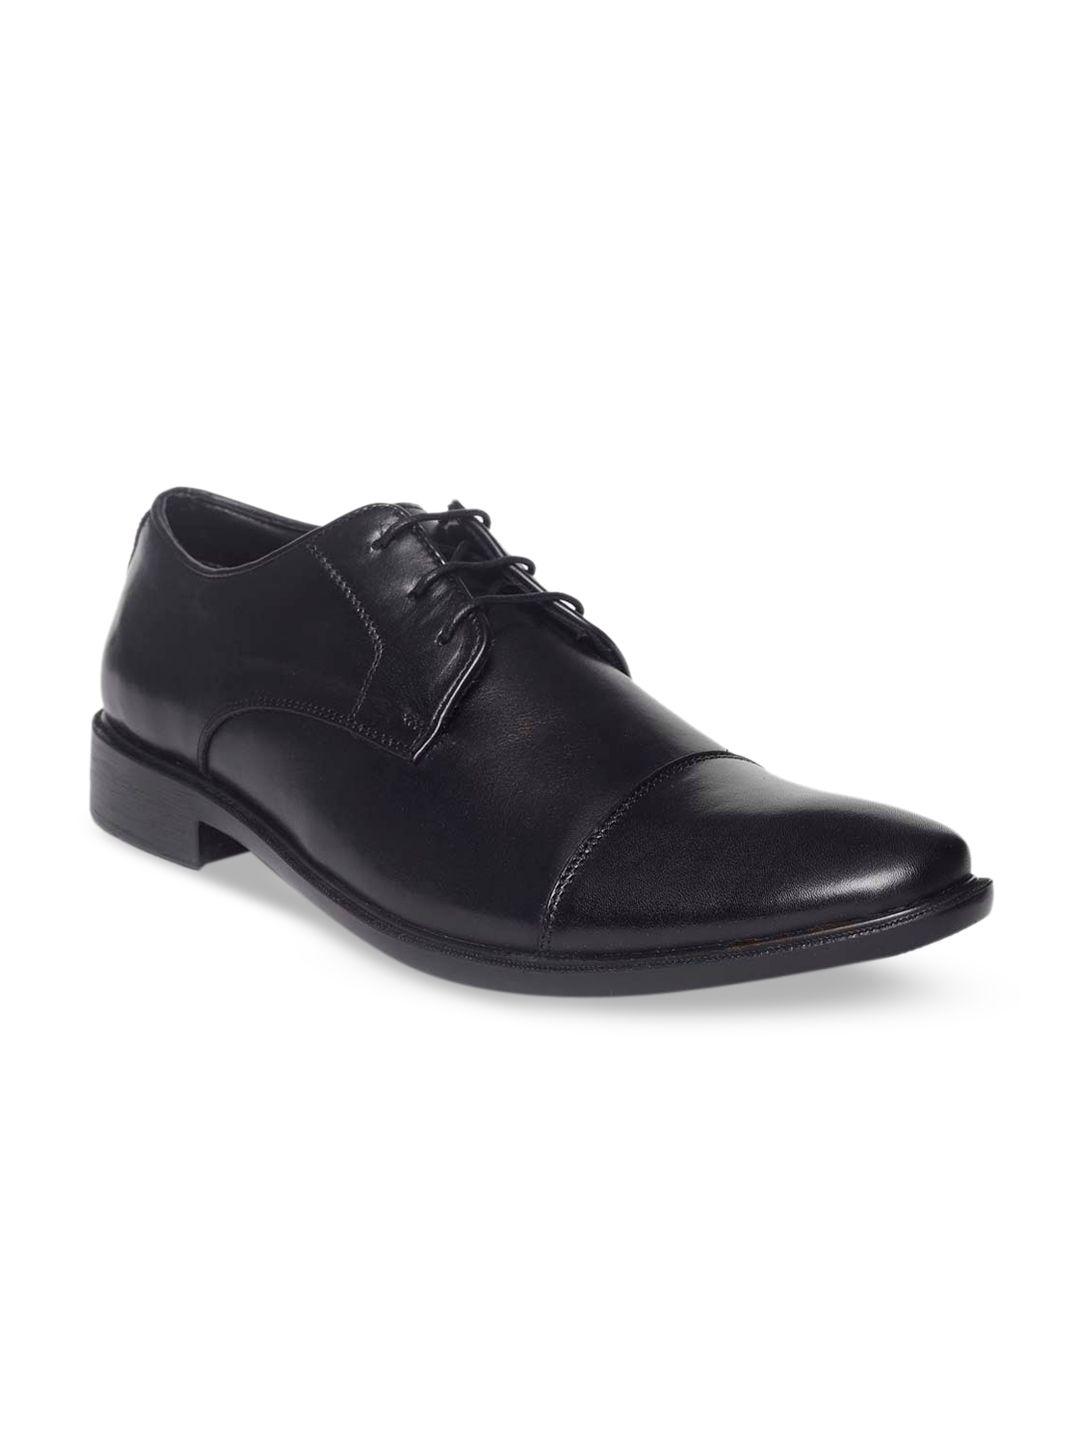 paragon-men-black-solid-leather-formal-derbys